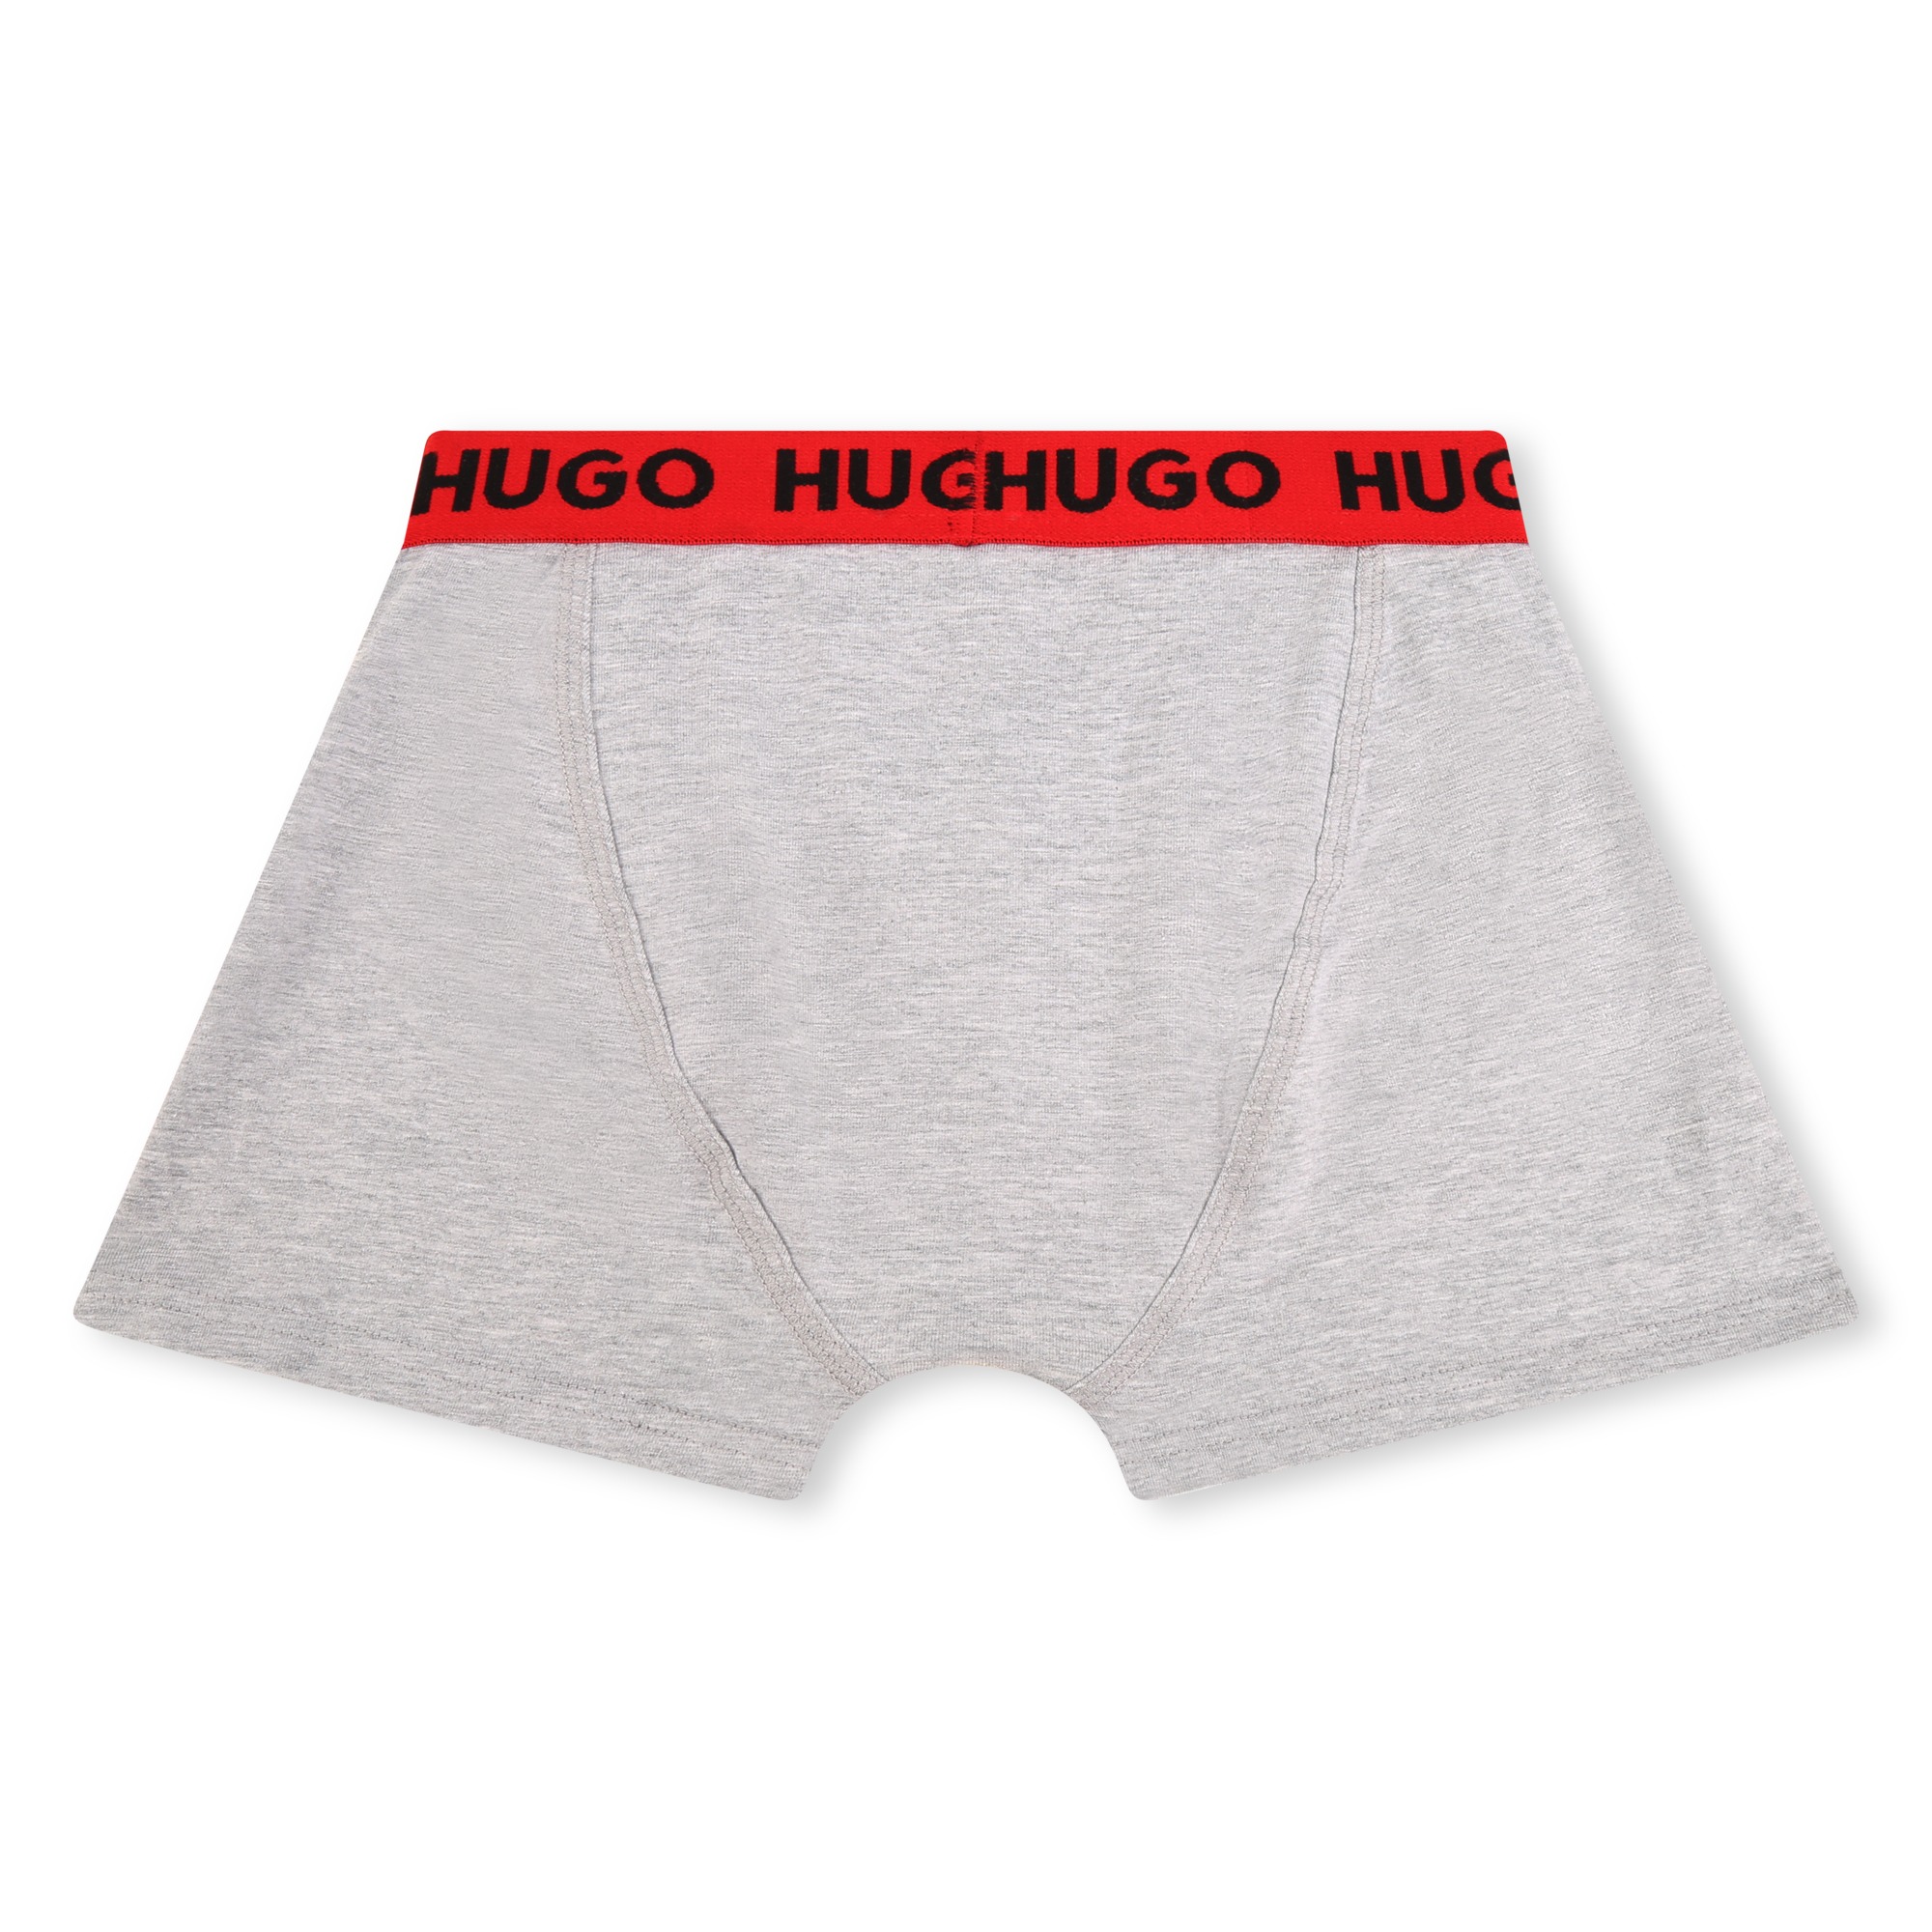 Set aus 2 einfarbigen Boxershorts mit Print HUGO Für JUNGE